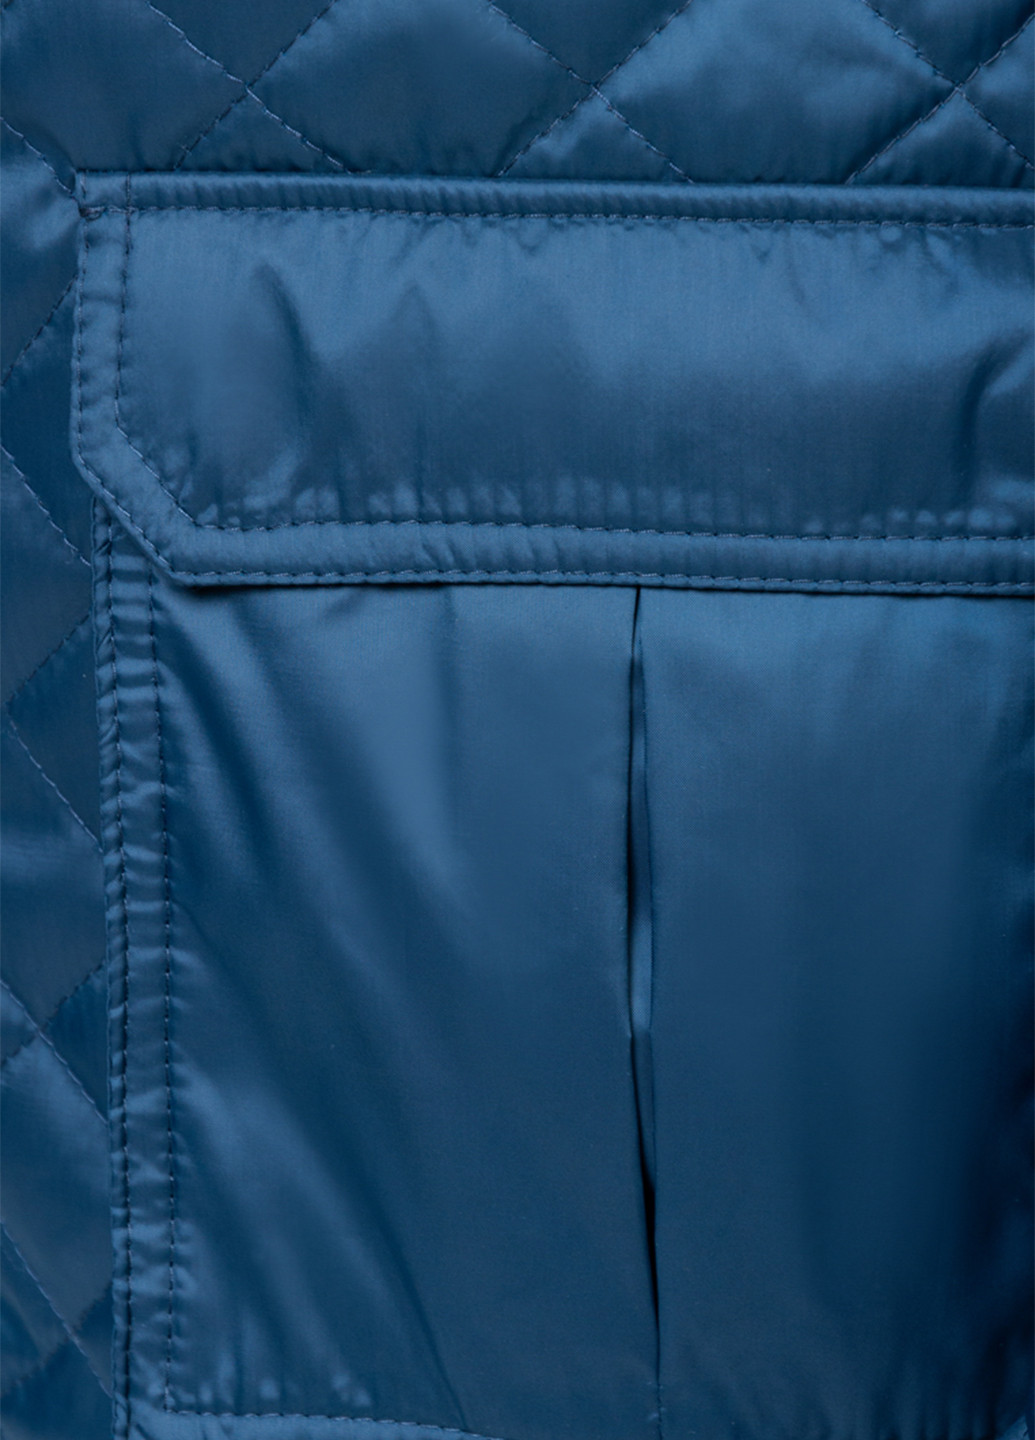 Синяя демисезонная куртка Arber